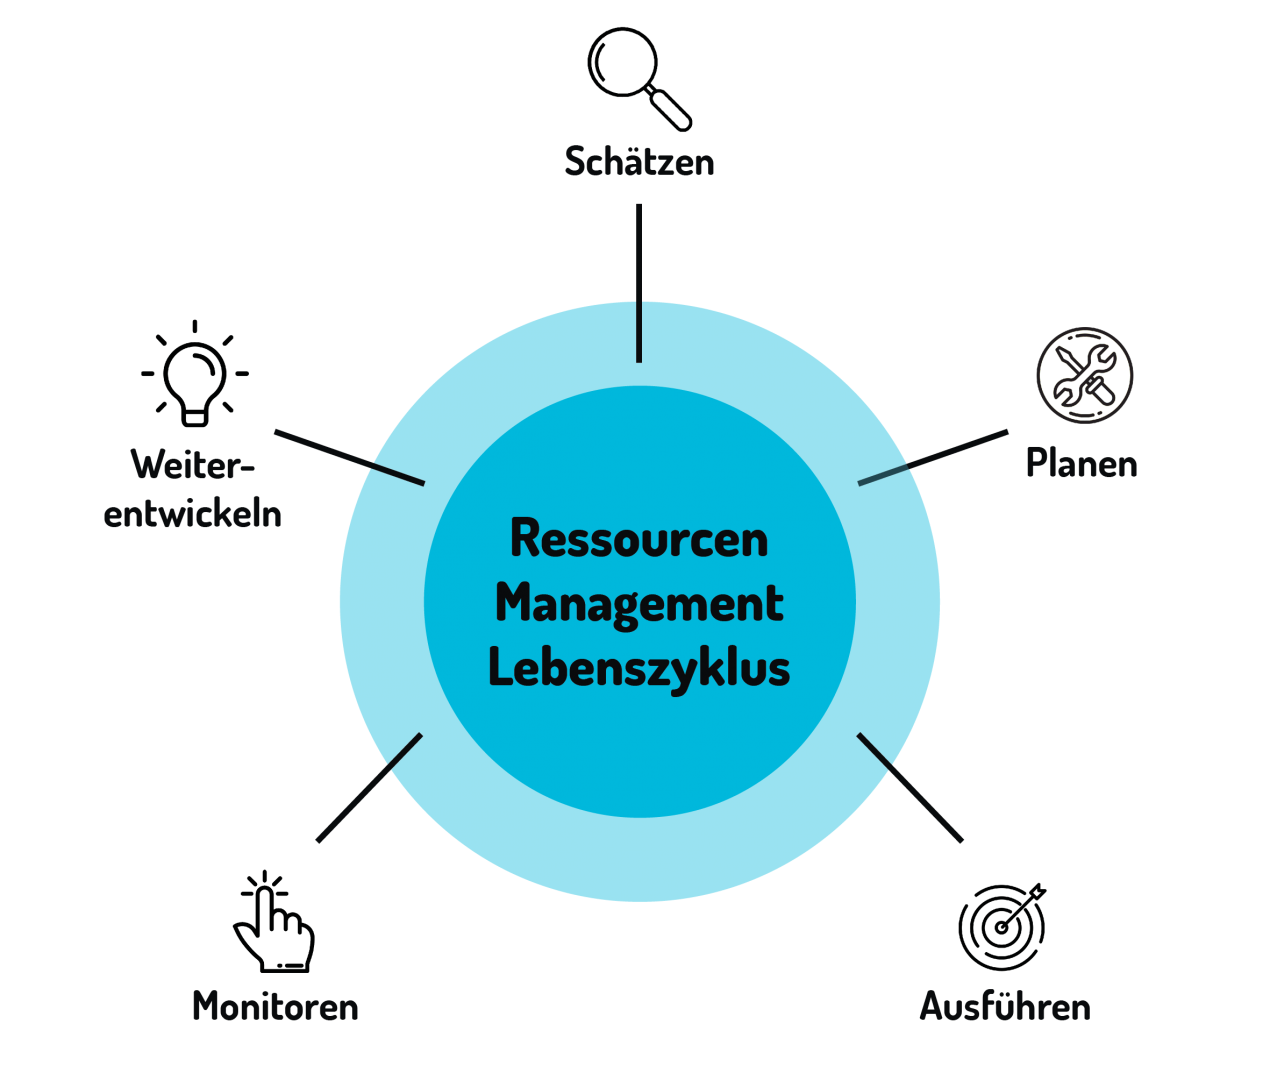 Ressourcen Management Lebenszyklus